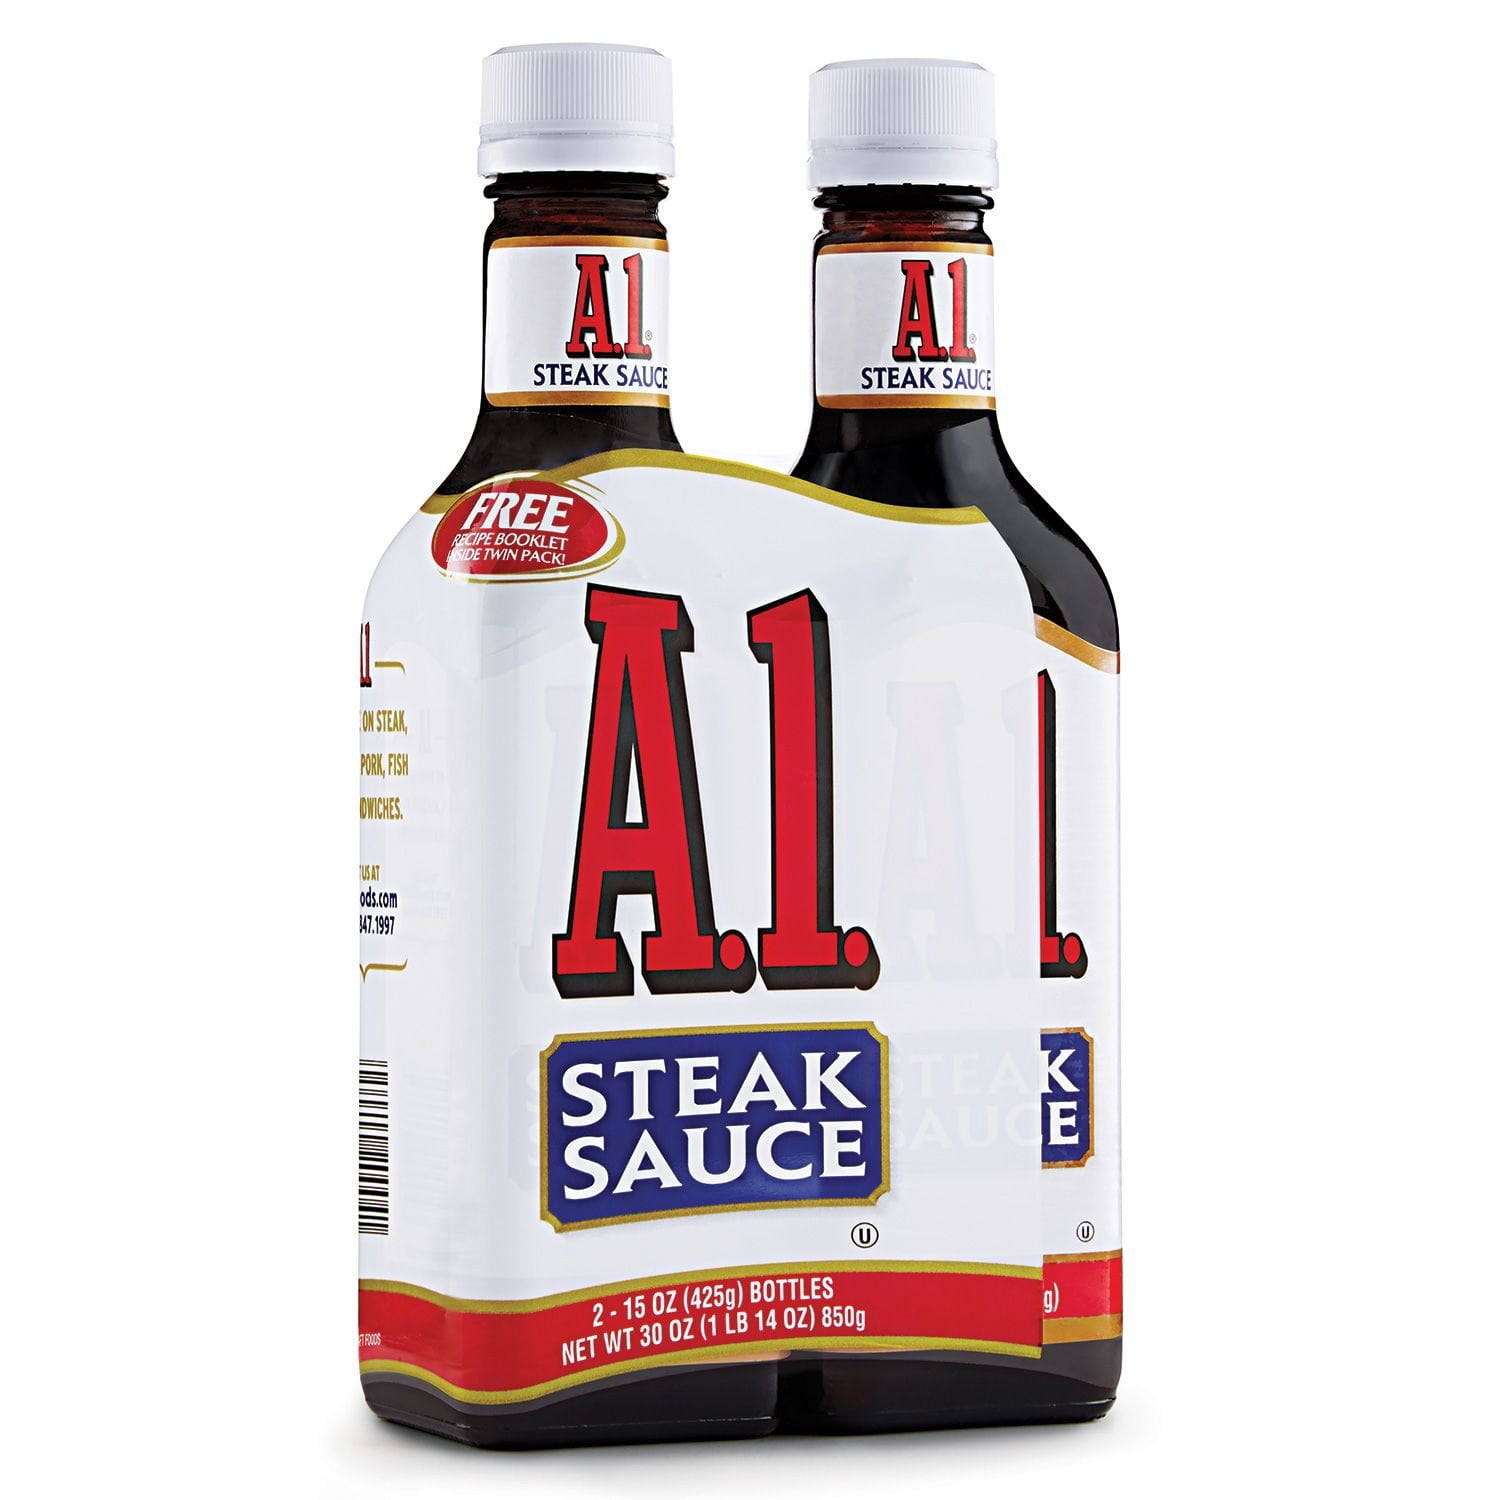 Buy A1 Original Steak Sauce - 400g Bottle